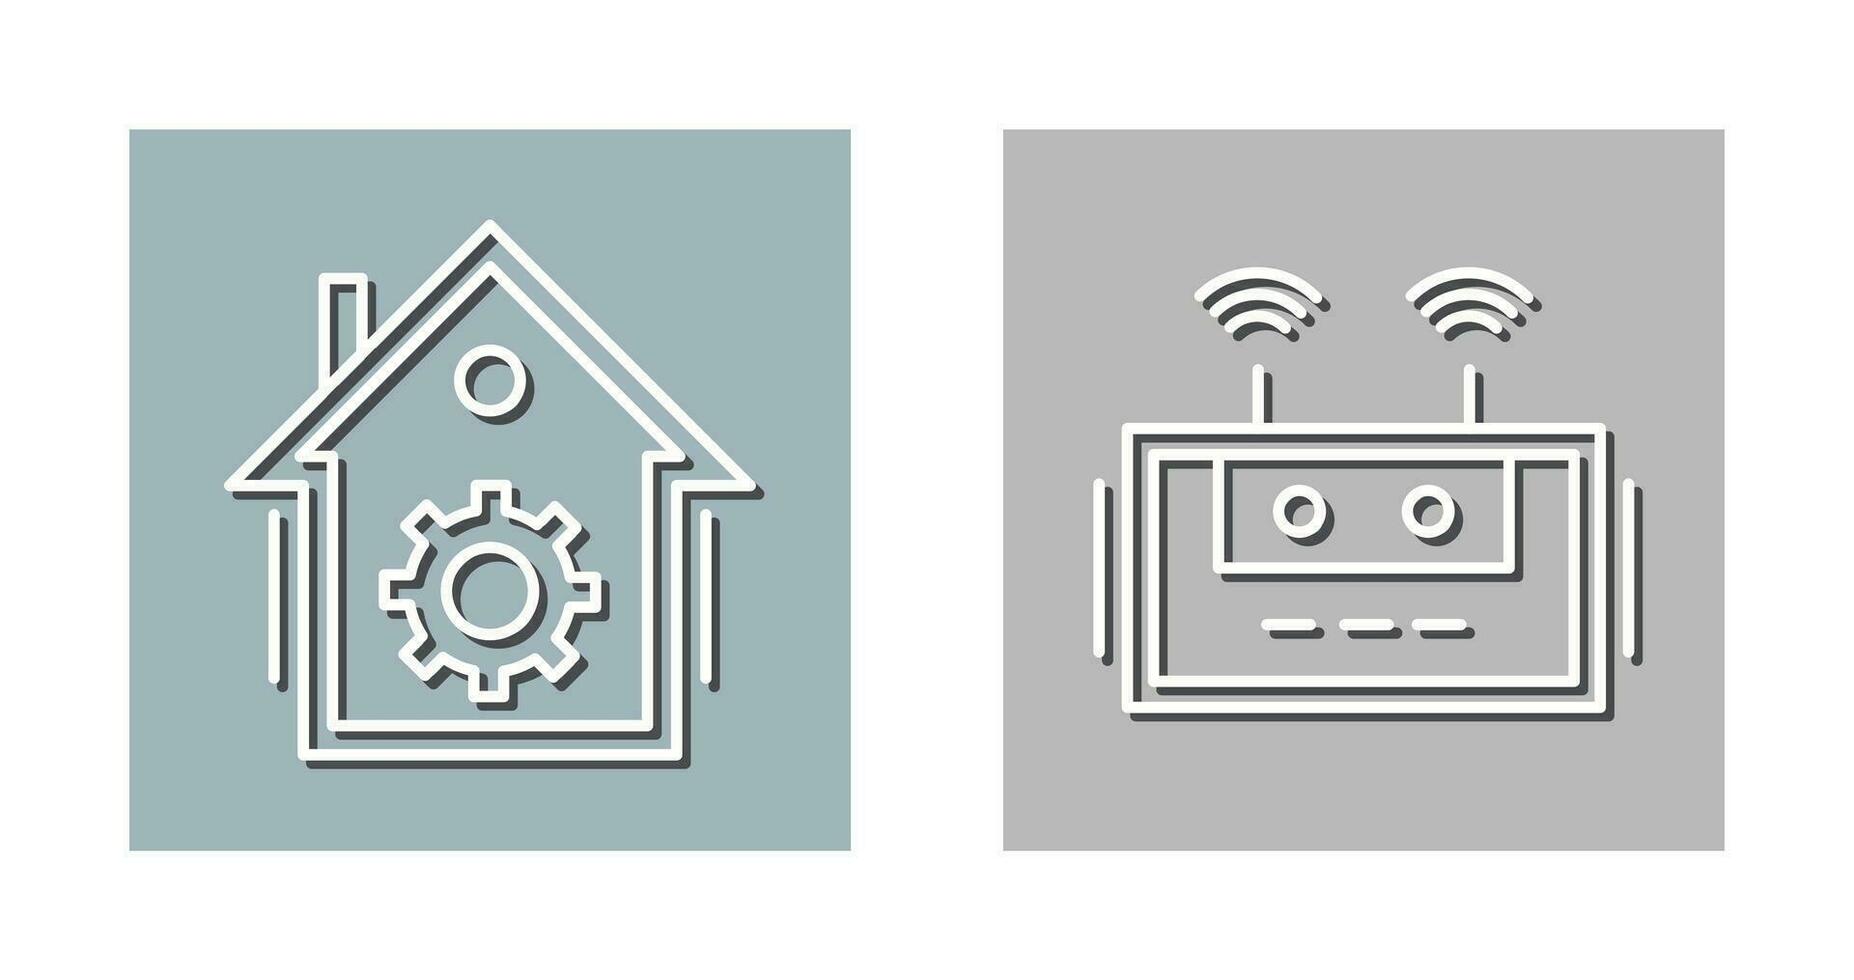 Zuhause Automatisierung und Router Symbol vektor